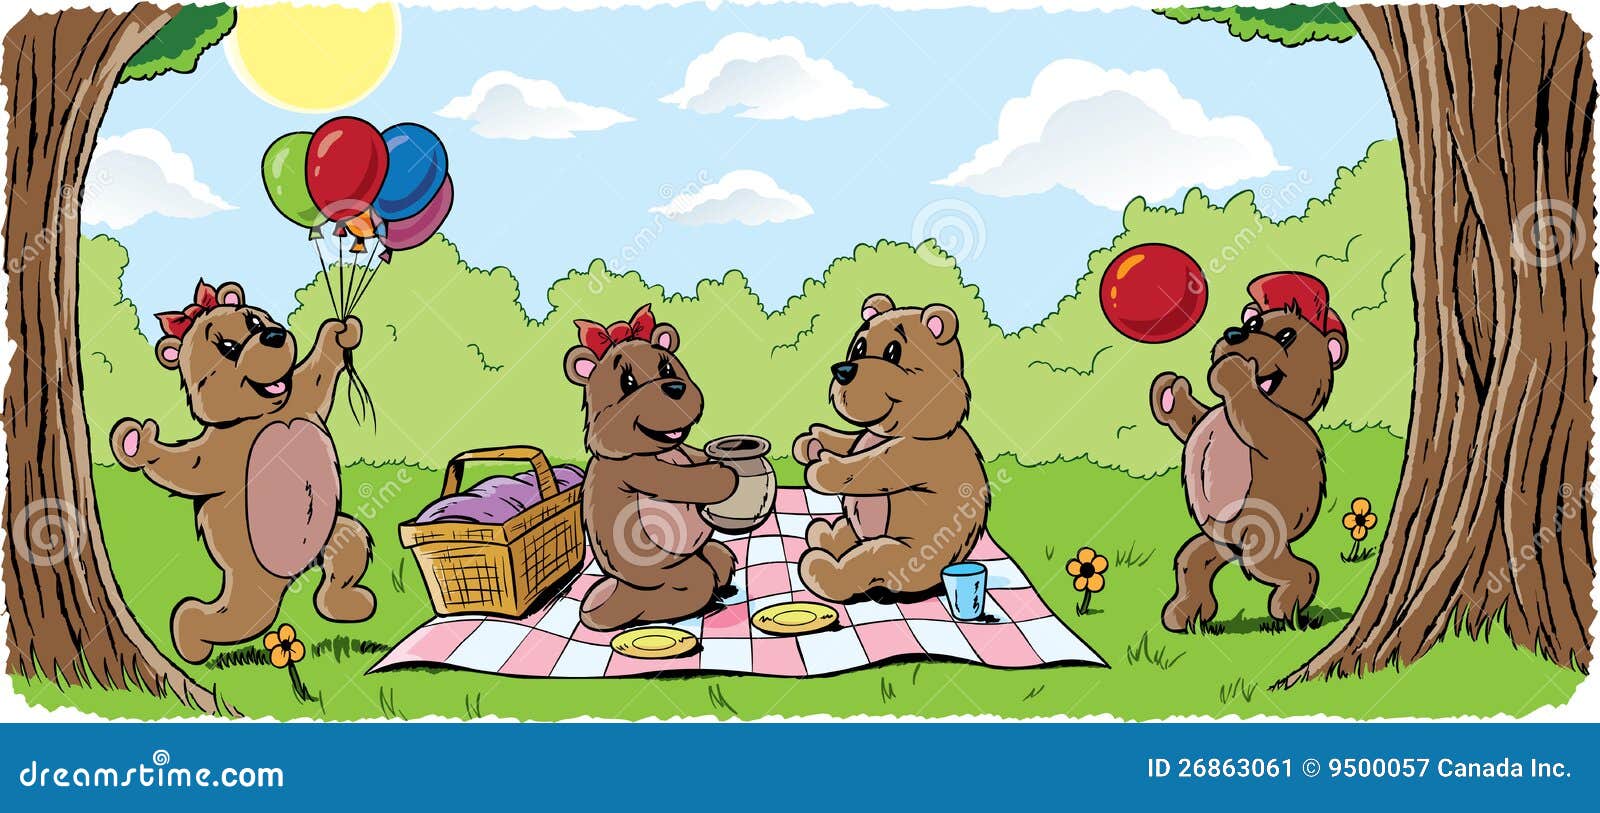 clipart teddy bear picnic - photo #20